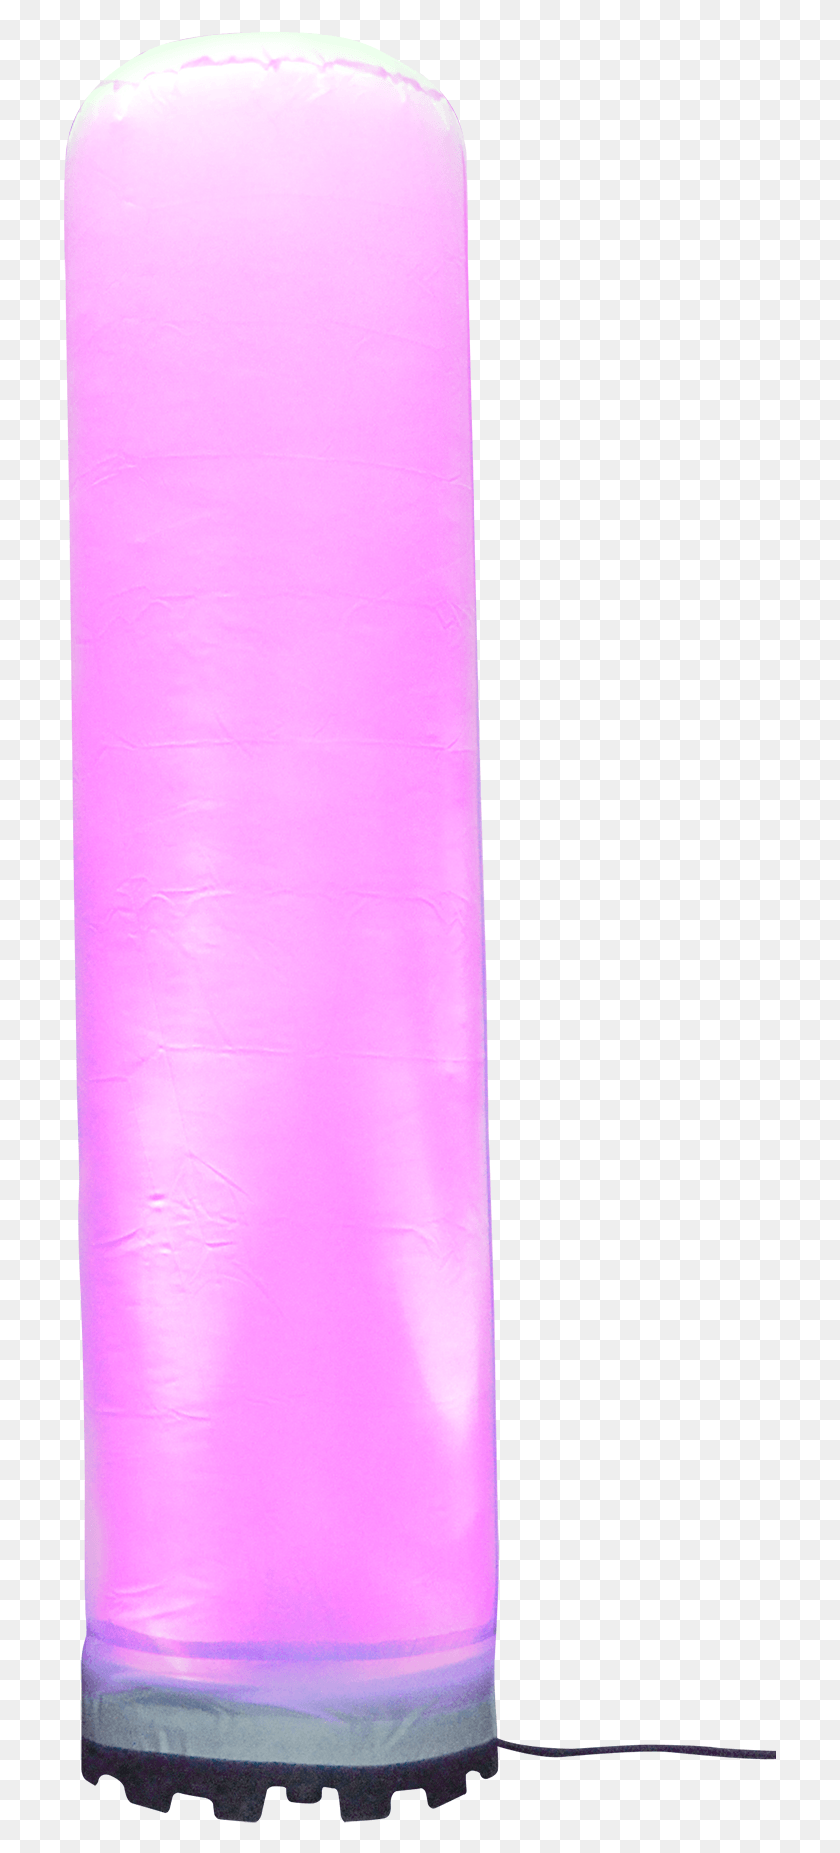 713x1793 Светодиодный Рекламный Столб Розовый Коврик, Бумага, Бумажное Полотенце, Полотенце Png Скачать